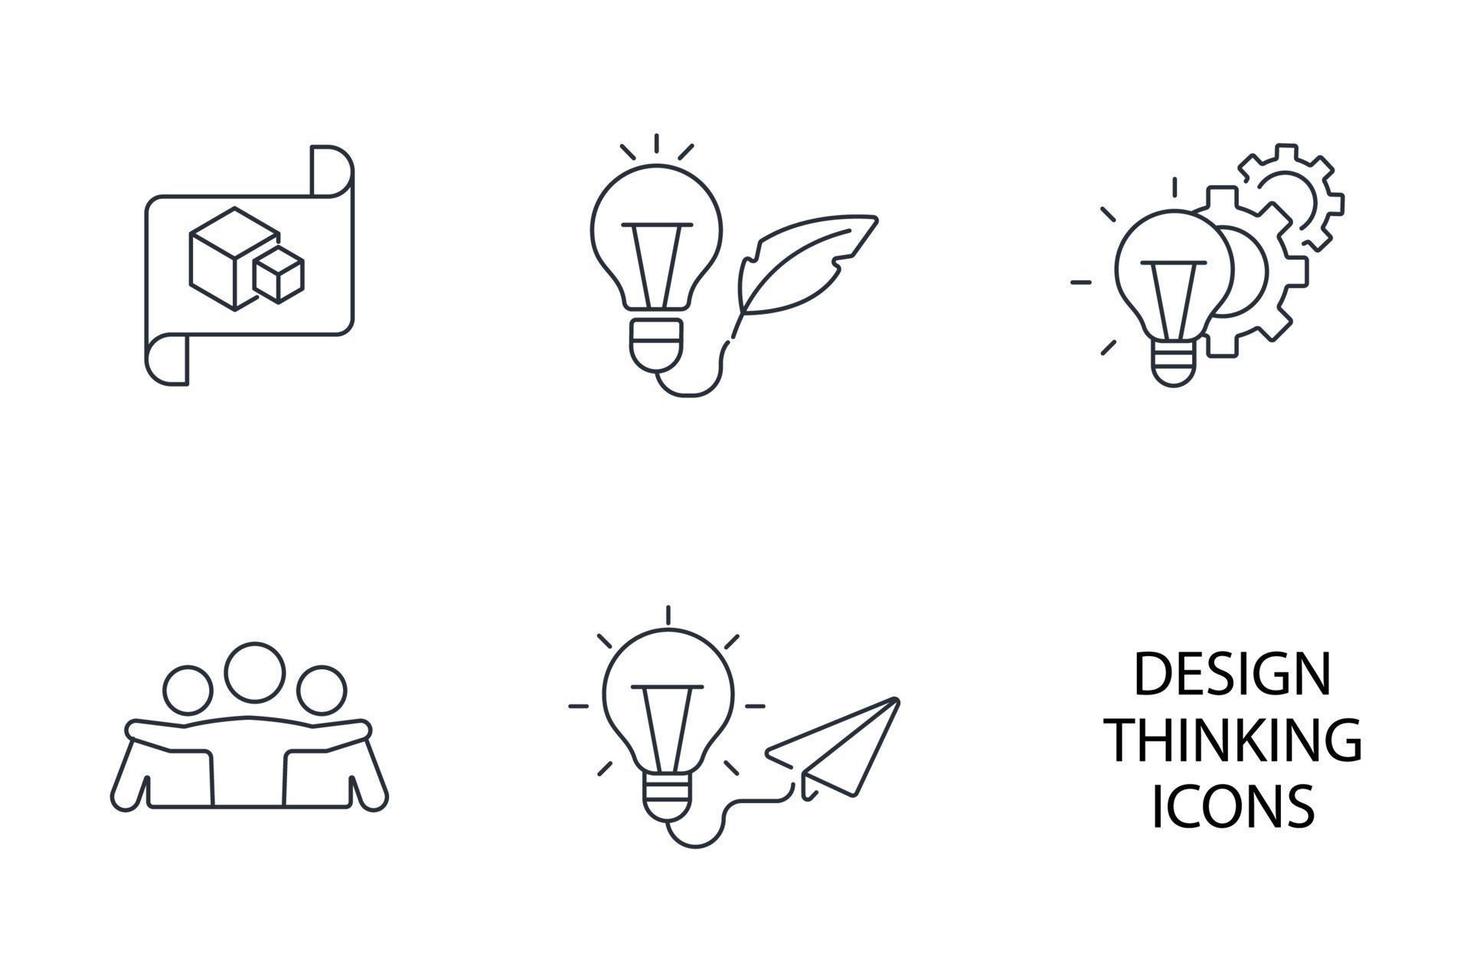 jeu d'icônes de pensée de conception. design thinking pack symbole éléments vectoriels pour le web infographique vecteur